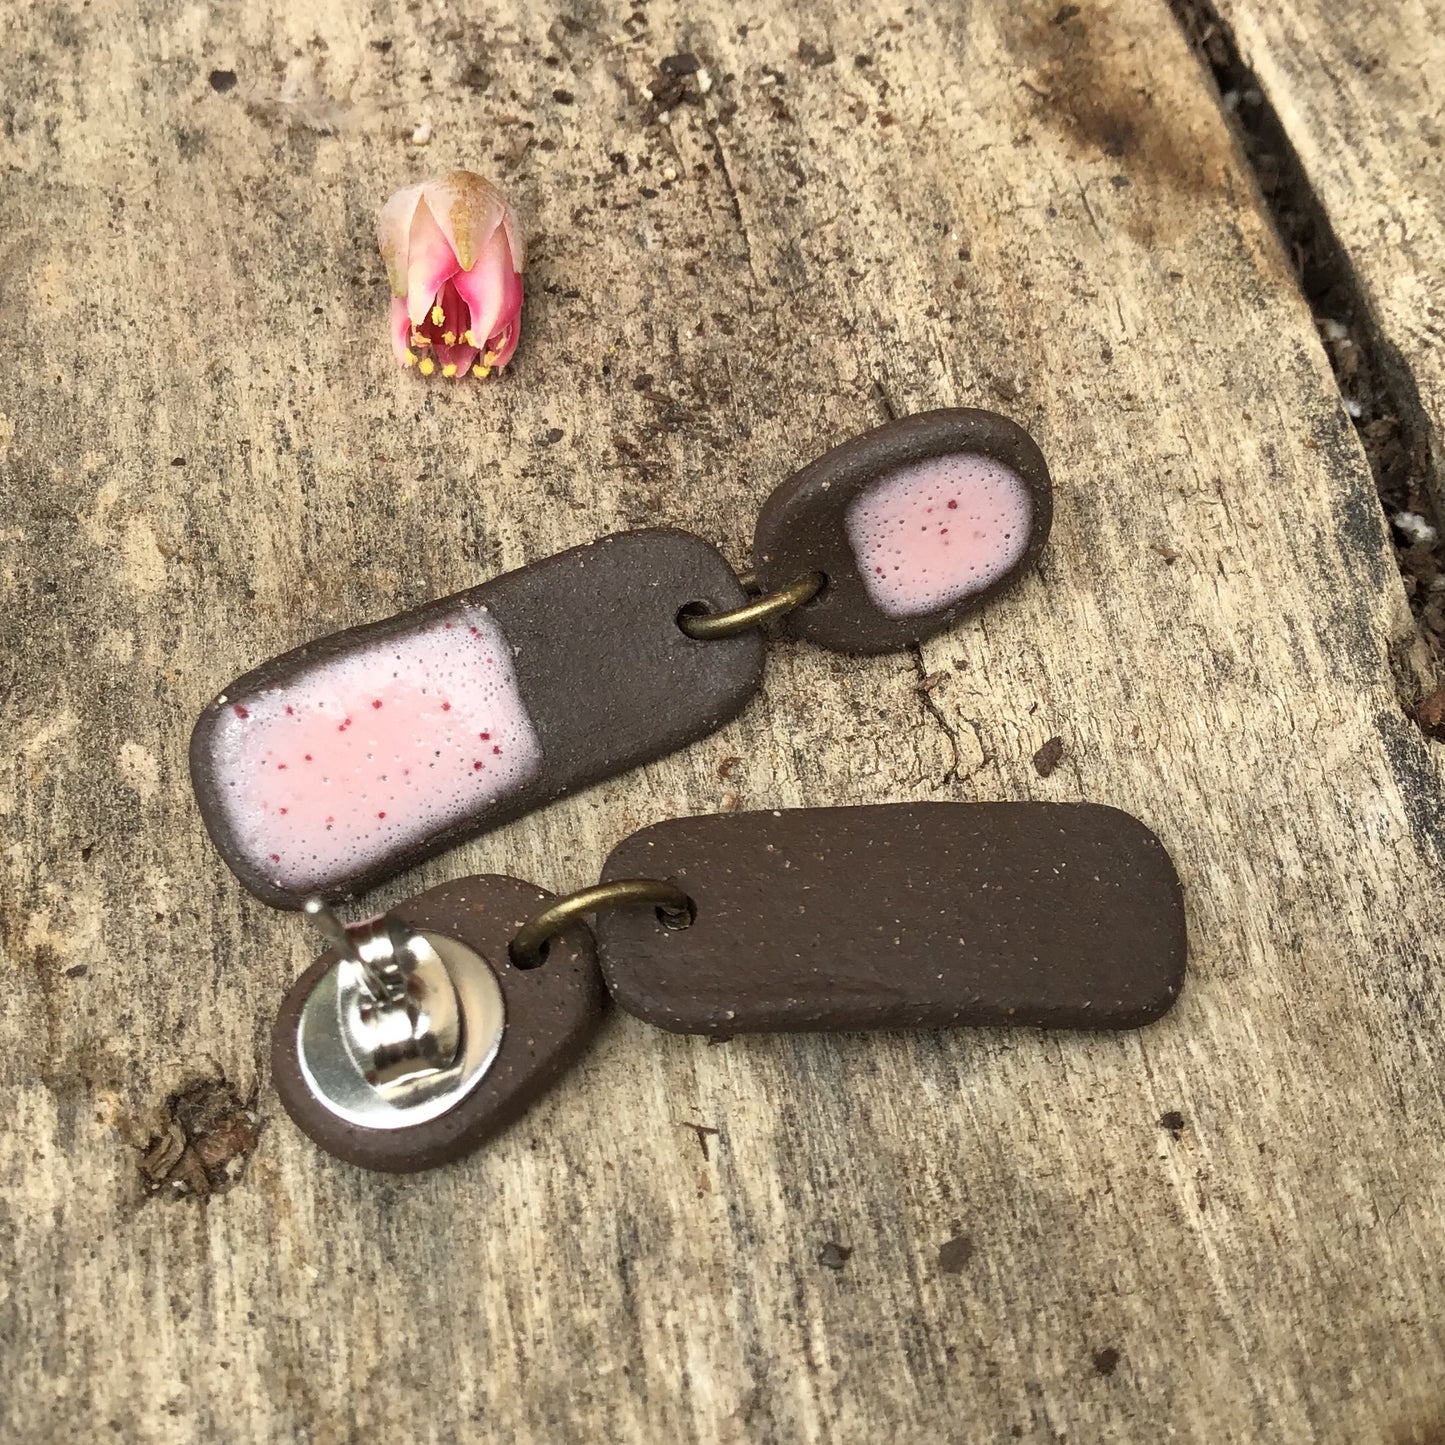 Black Clay + Speckled Pink Ceramic Earrings - Rustic Ceramic Dangle Earrings